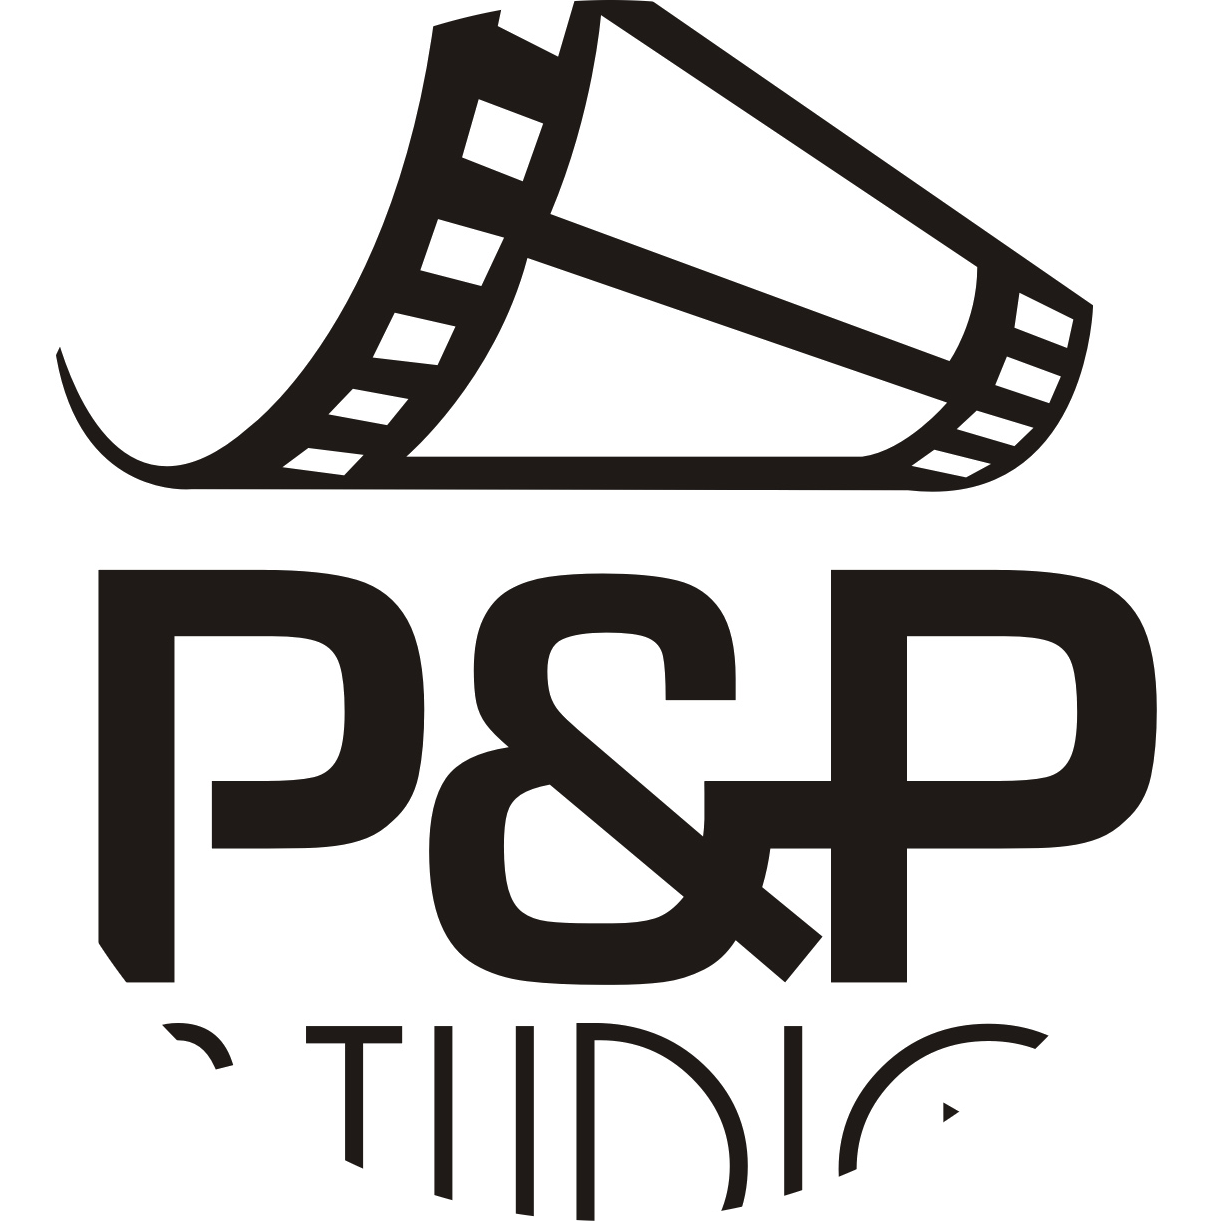 P&P STUDIO(@pp_studio) • Author of a photostory on seven.pics